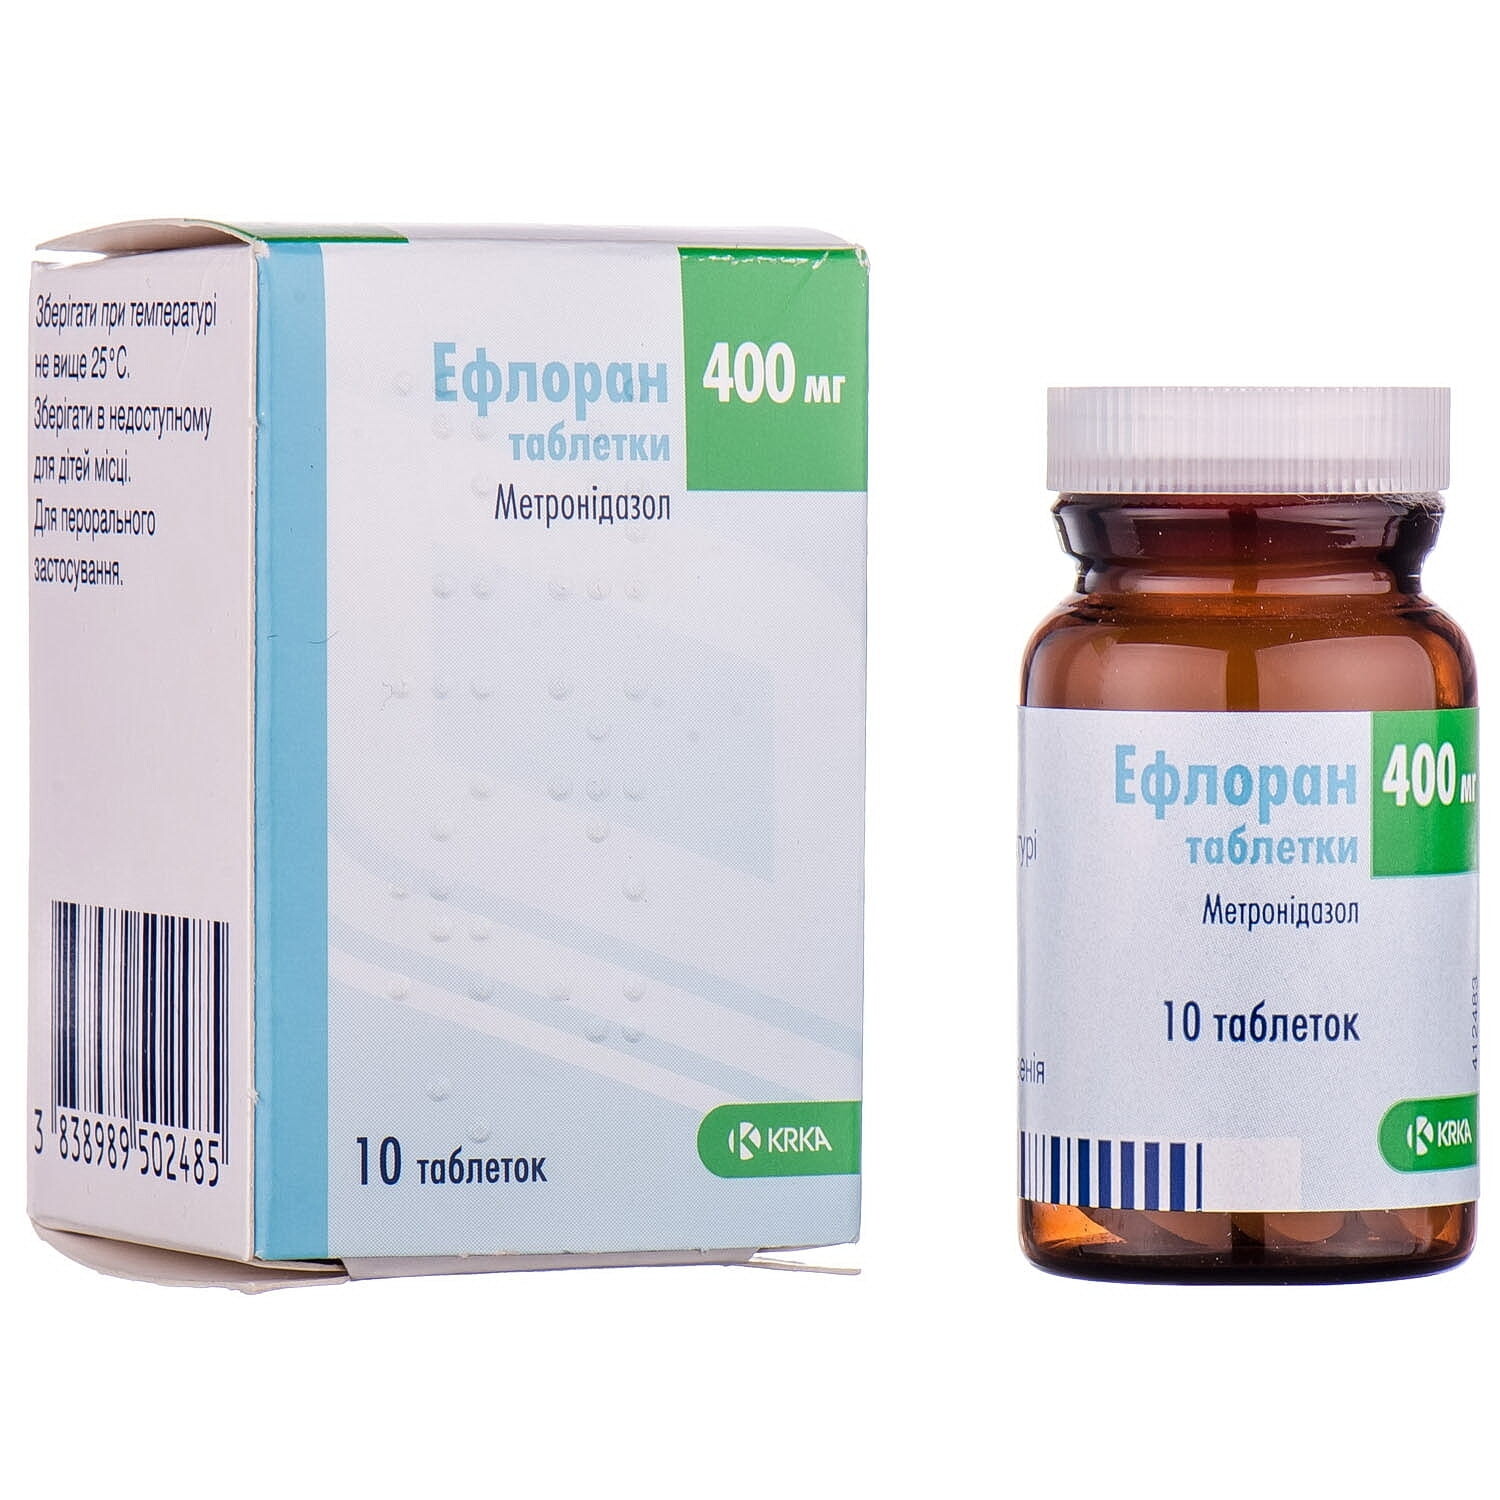 Эфлоран инструкция по применению, цена на лекарство -  антибиотик .